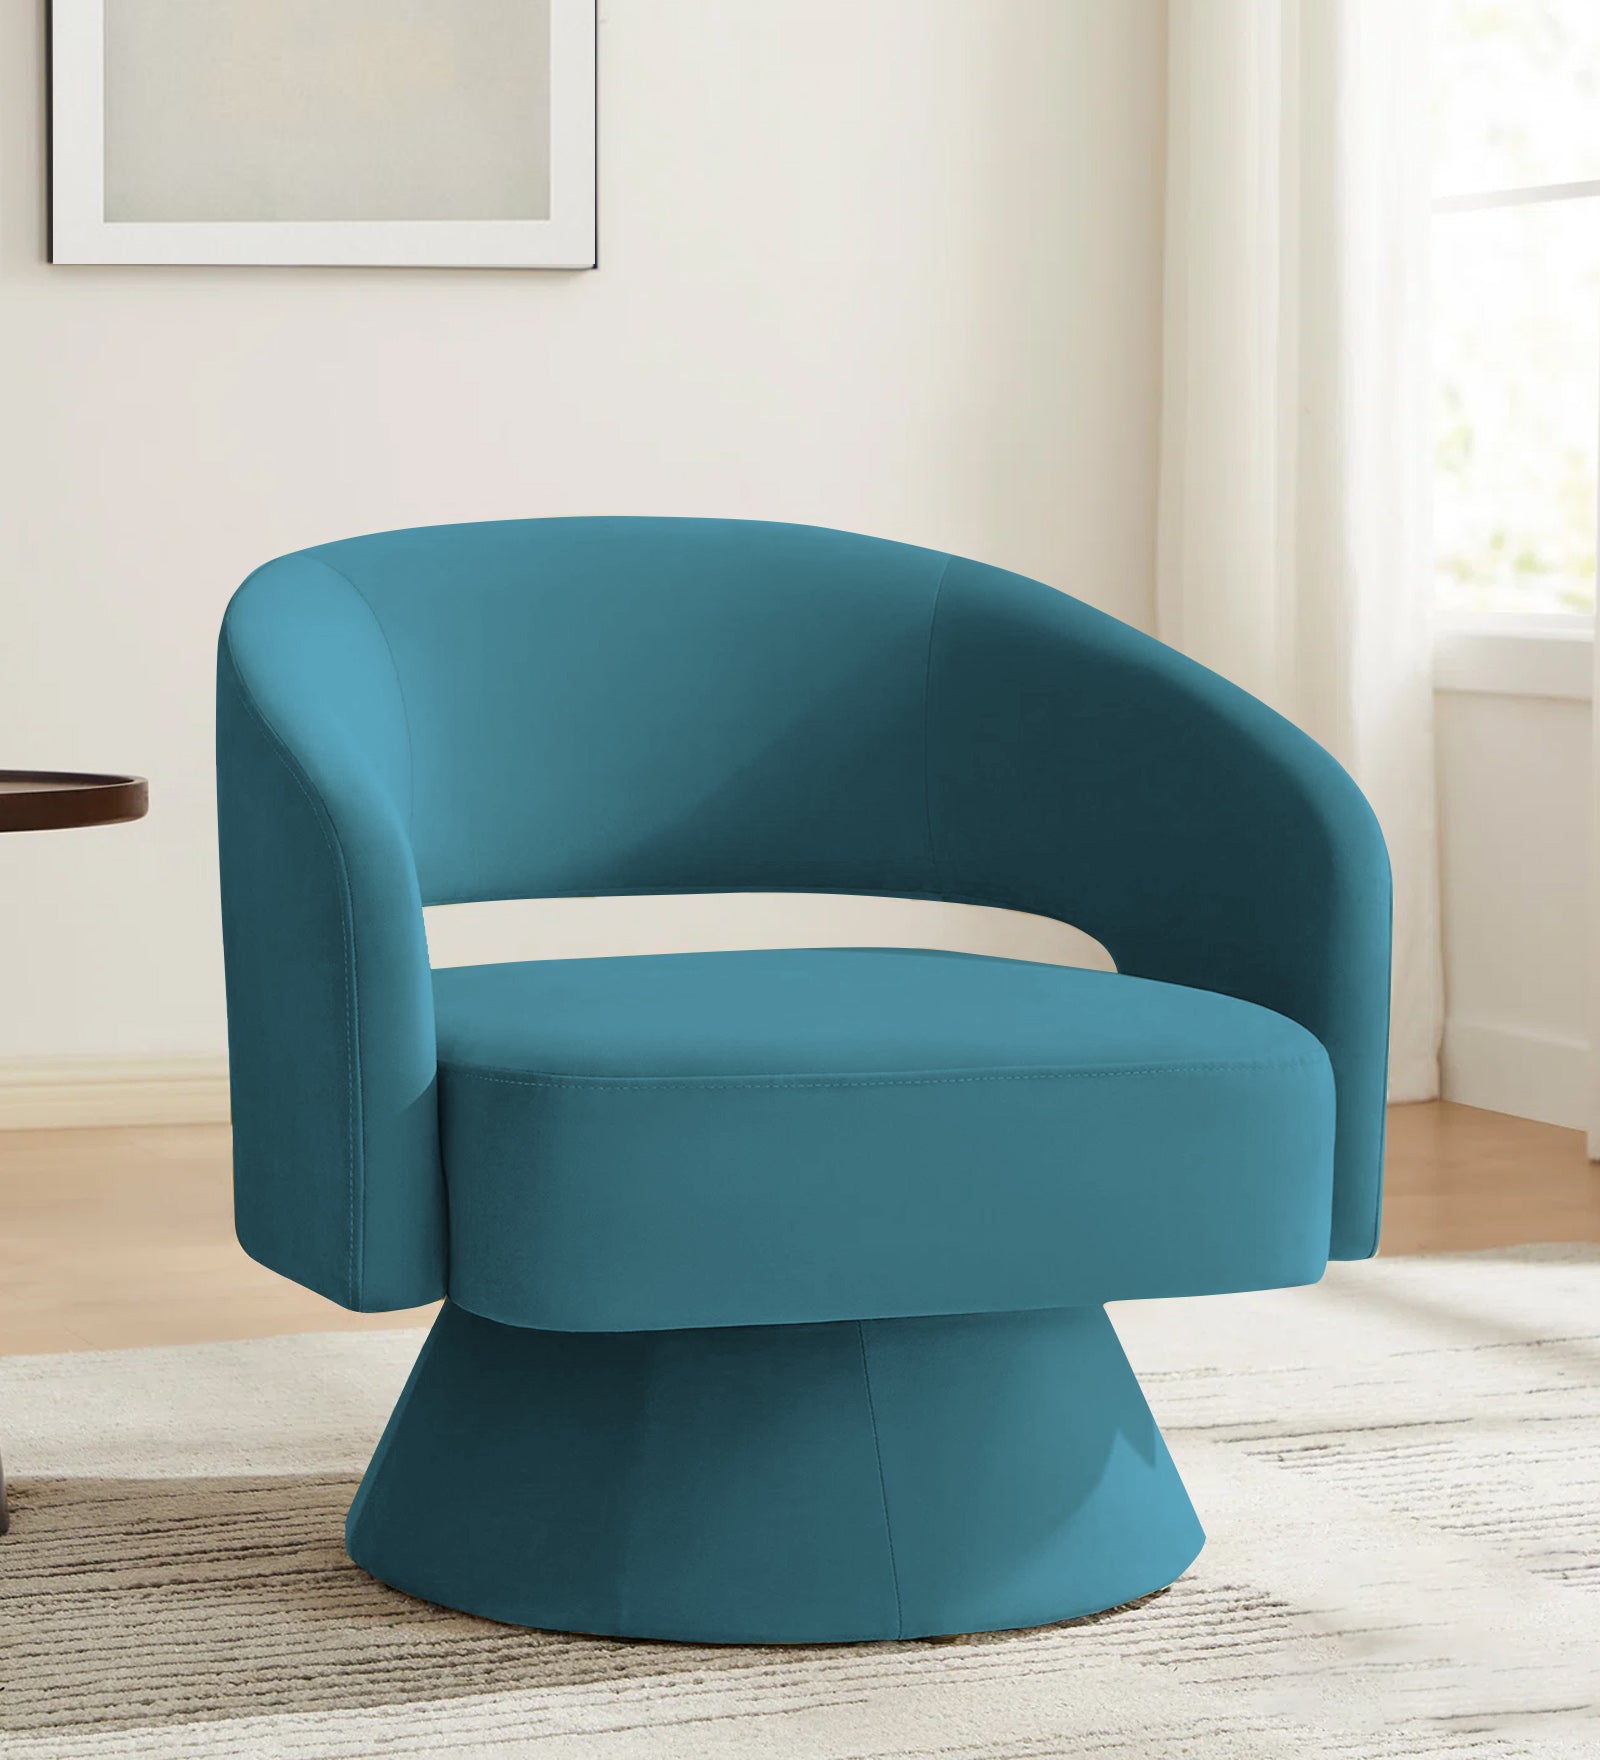 Pendra Velvet Swivel Chair in Aqua Blue Colour